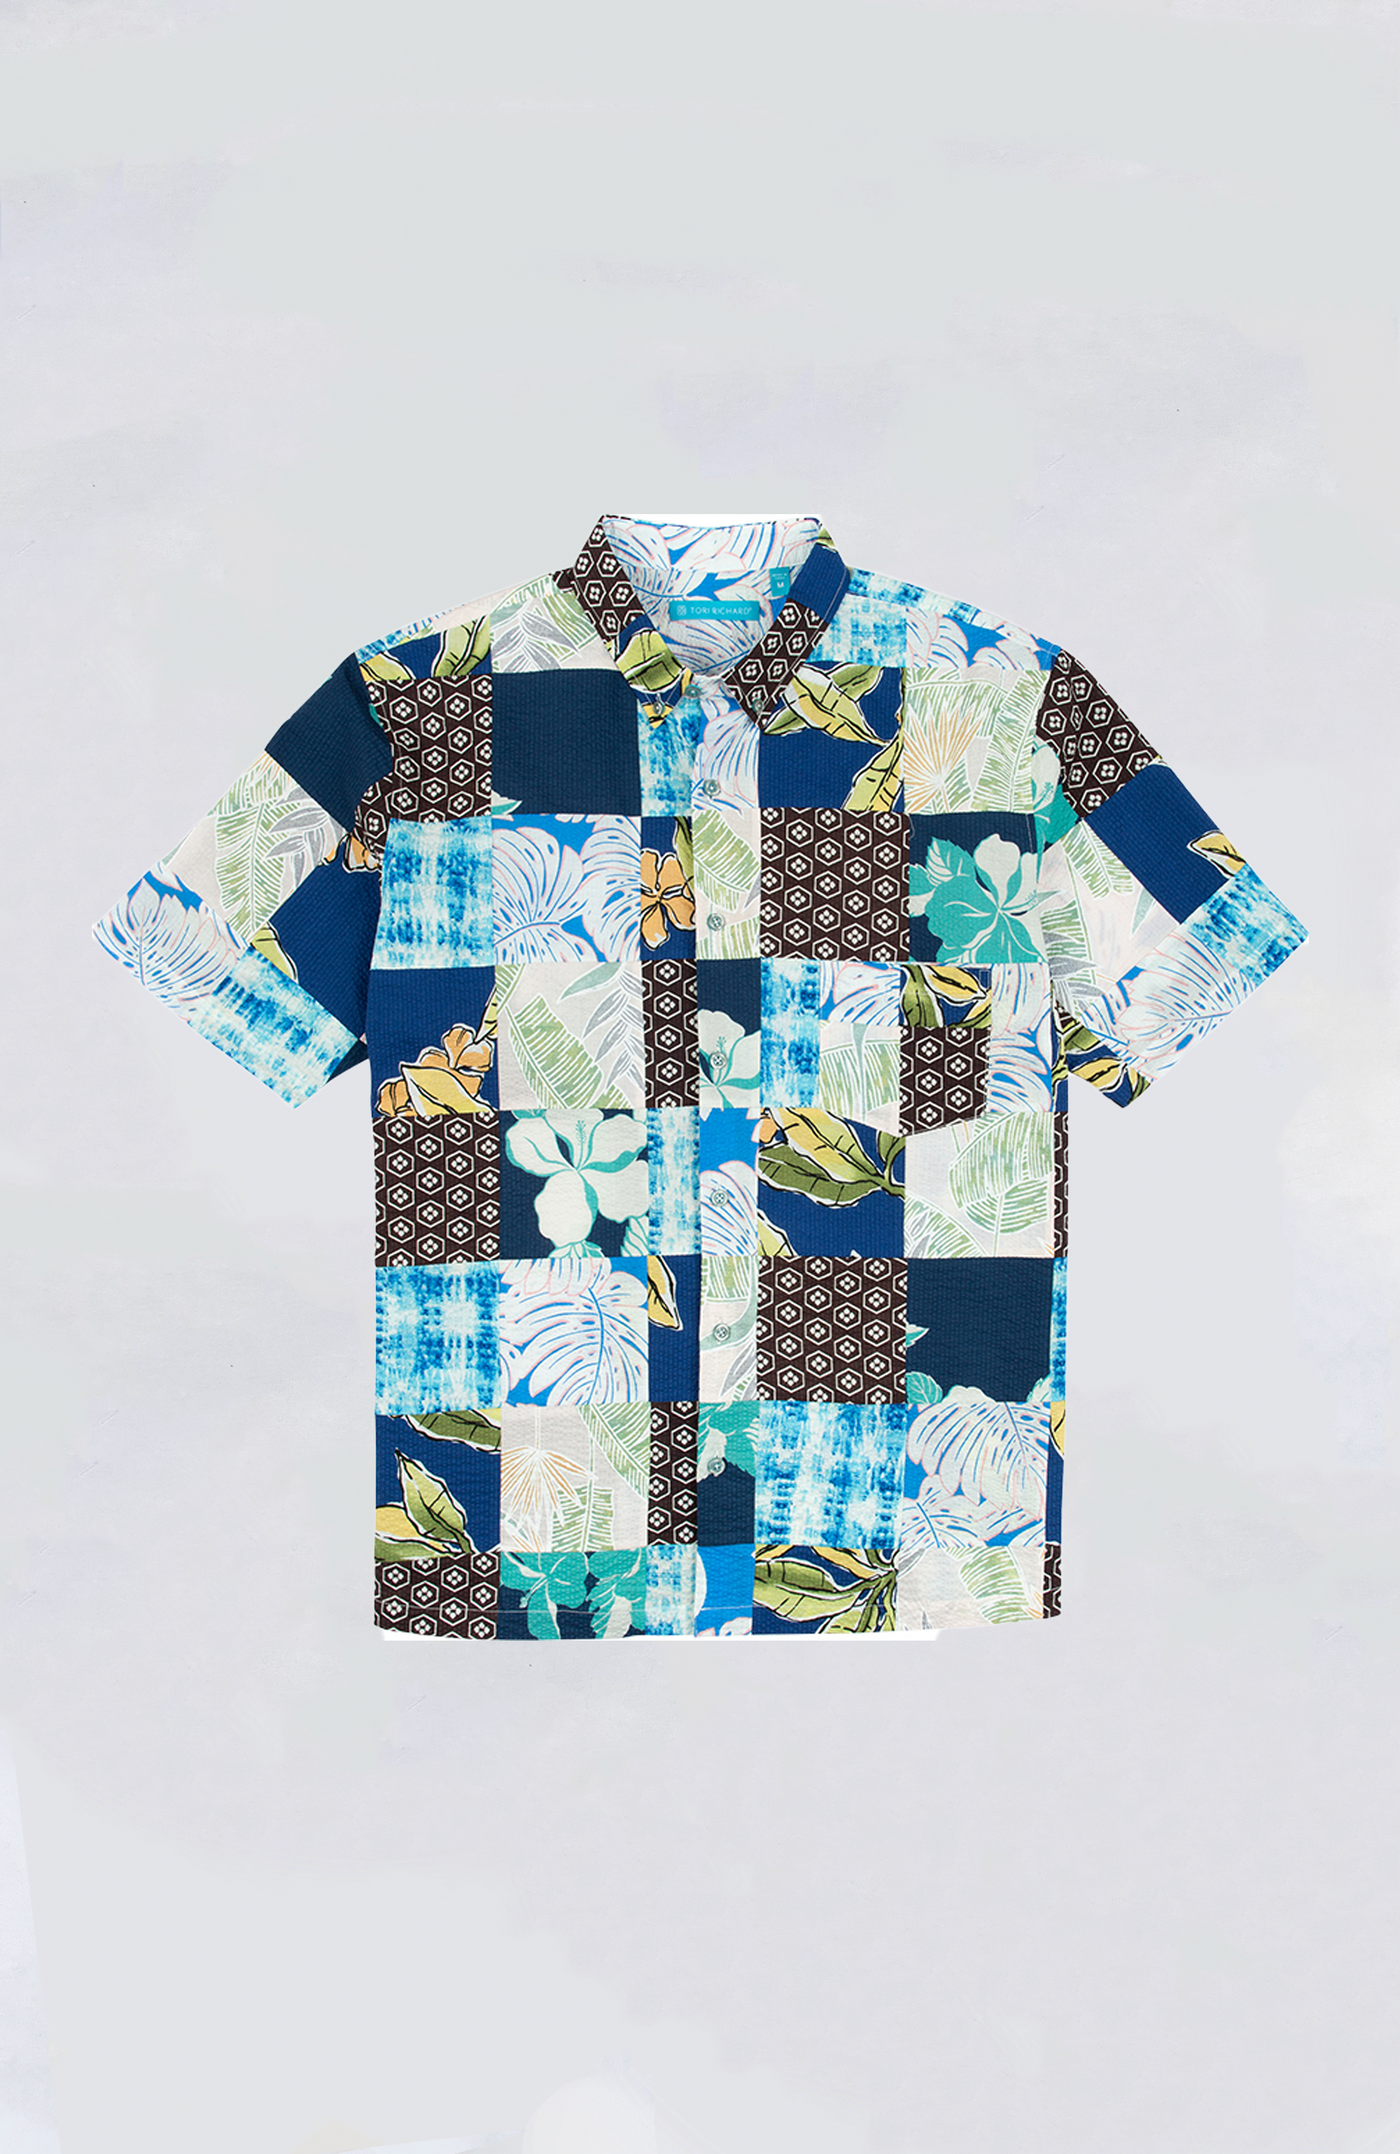 Tori Richard - It Takes a Village Aloha Shirt